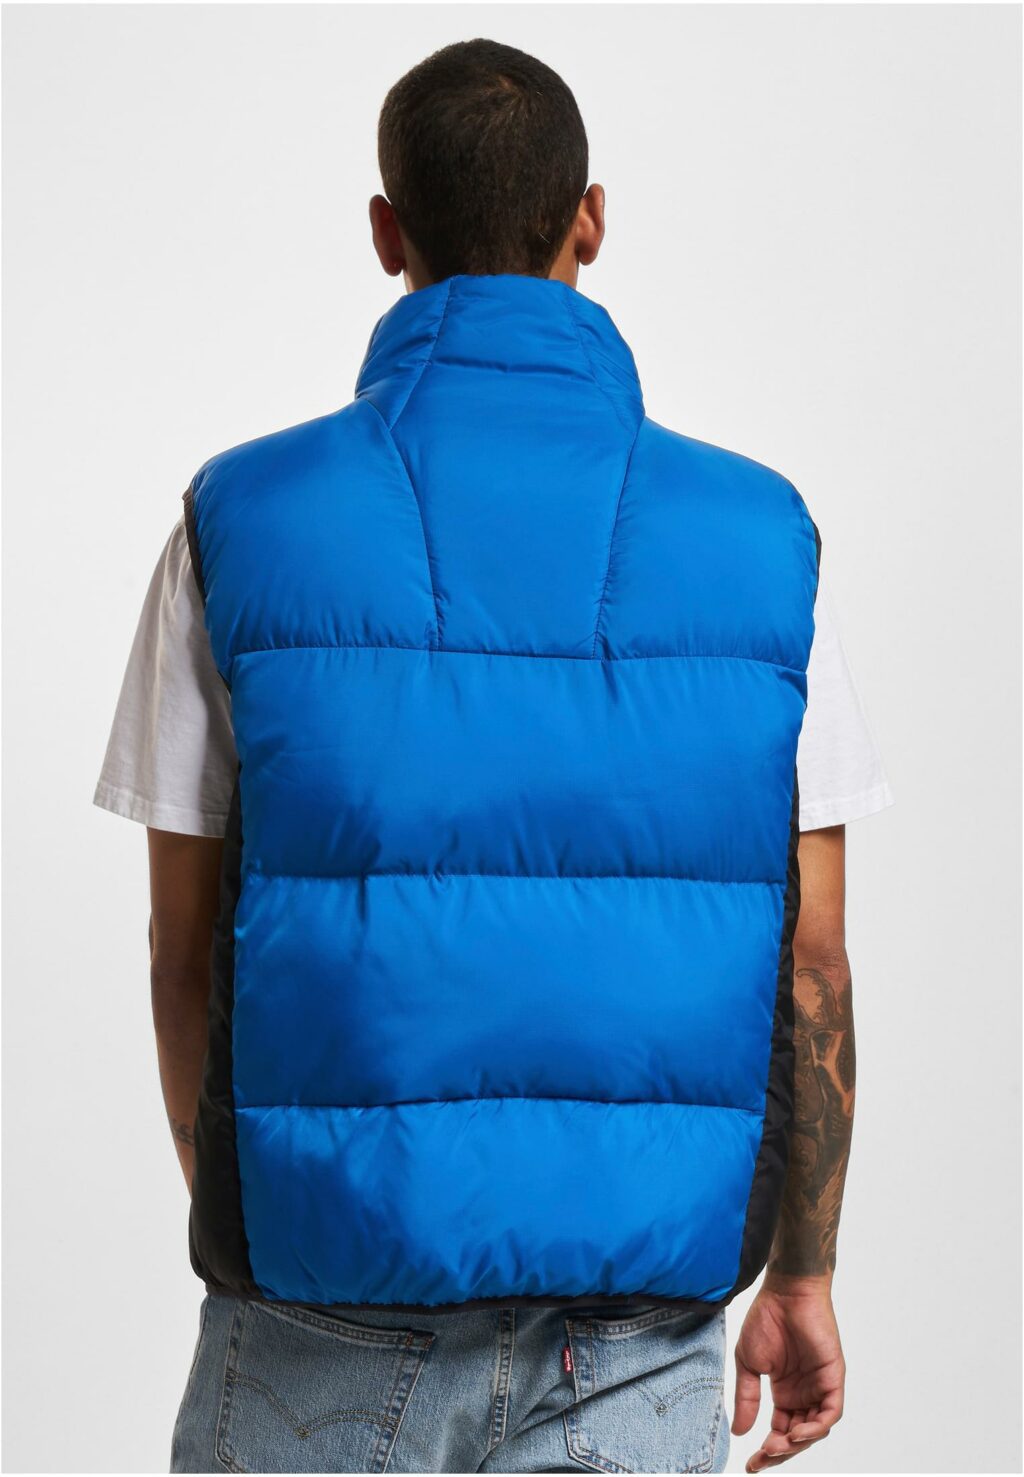 PM234-006-1 SP Bubble Vest 1.1 blue/black 6072272